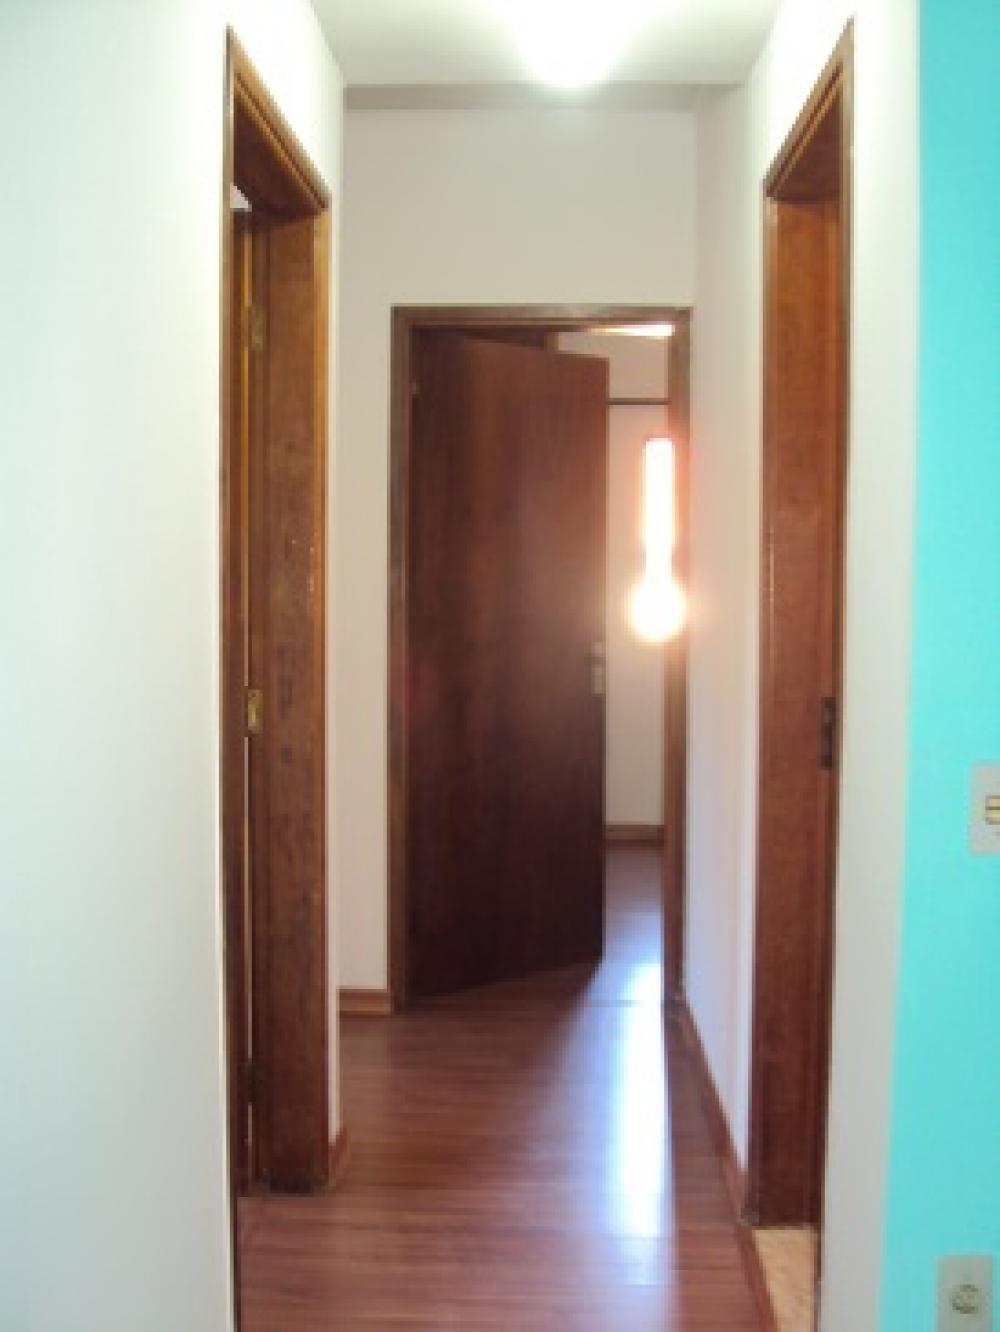 Alugar Apartamento / Padrão em São José do Rio Preto R$ 850,00 - Foto 19